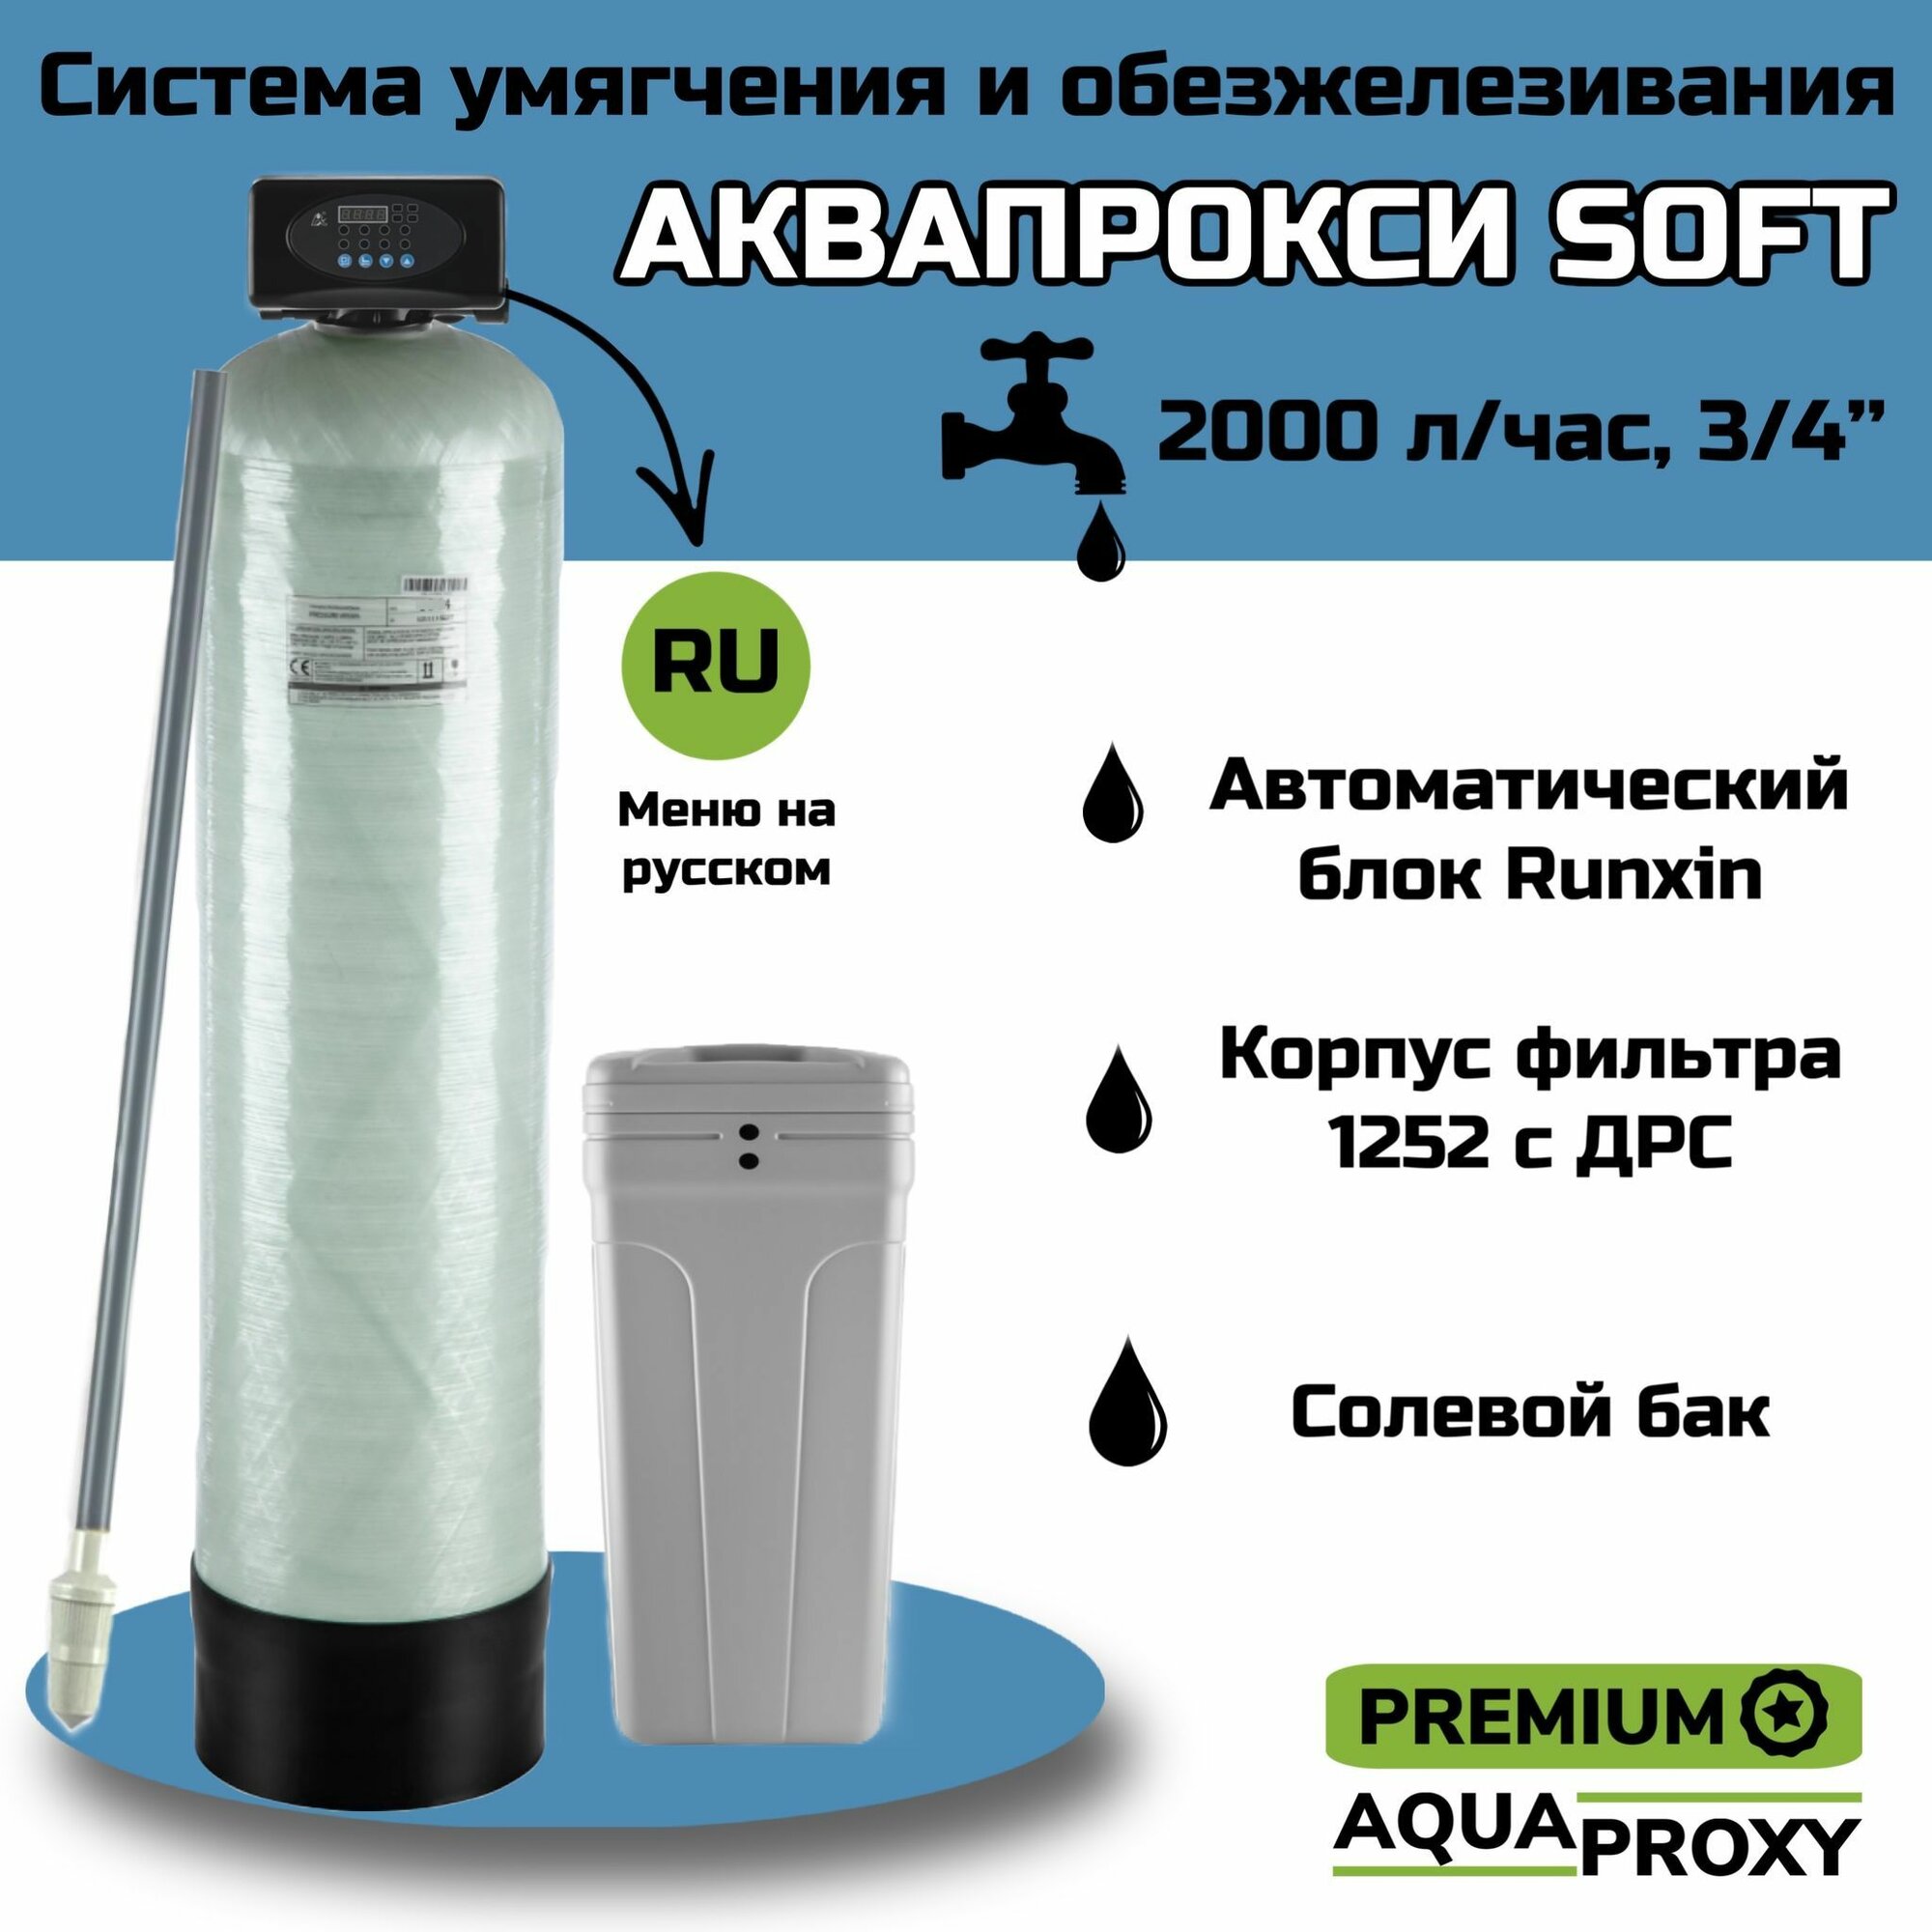 Автоматический фильтр умягчения обезжелезивания воды AquaProxy 1252 Q система очистки воды из скважины для дачи и дома и предприятий (2000 л/ч 3/4)